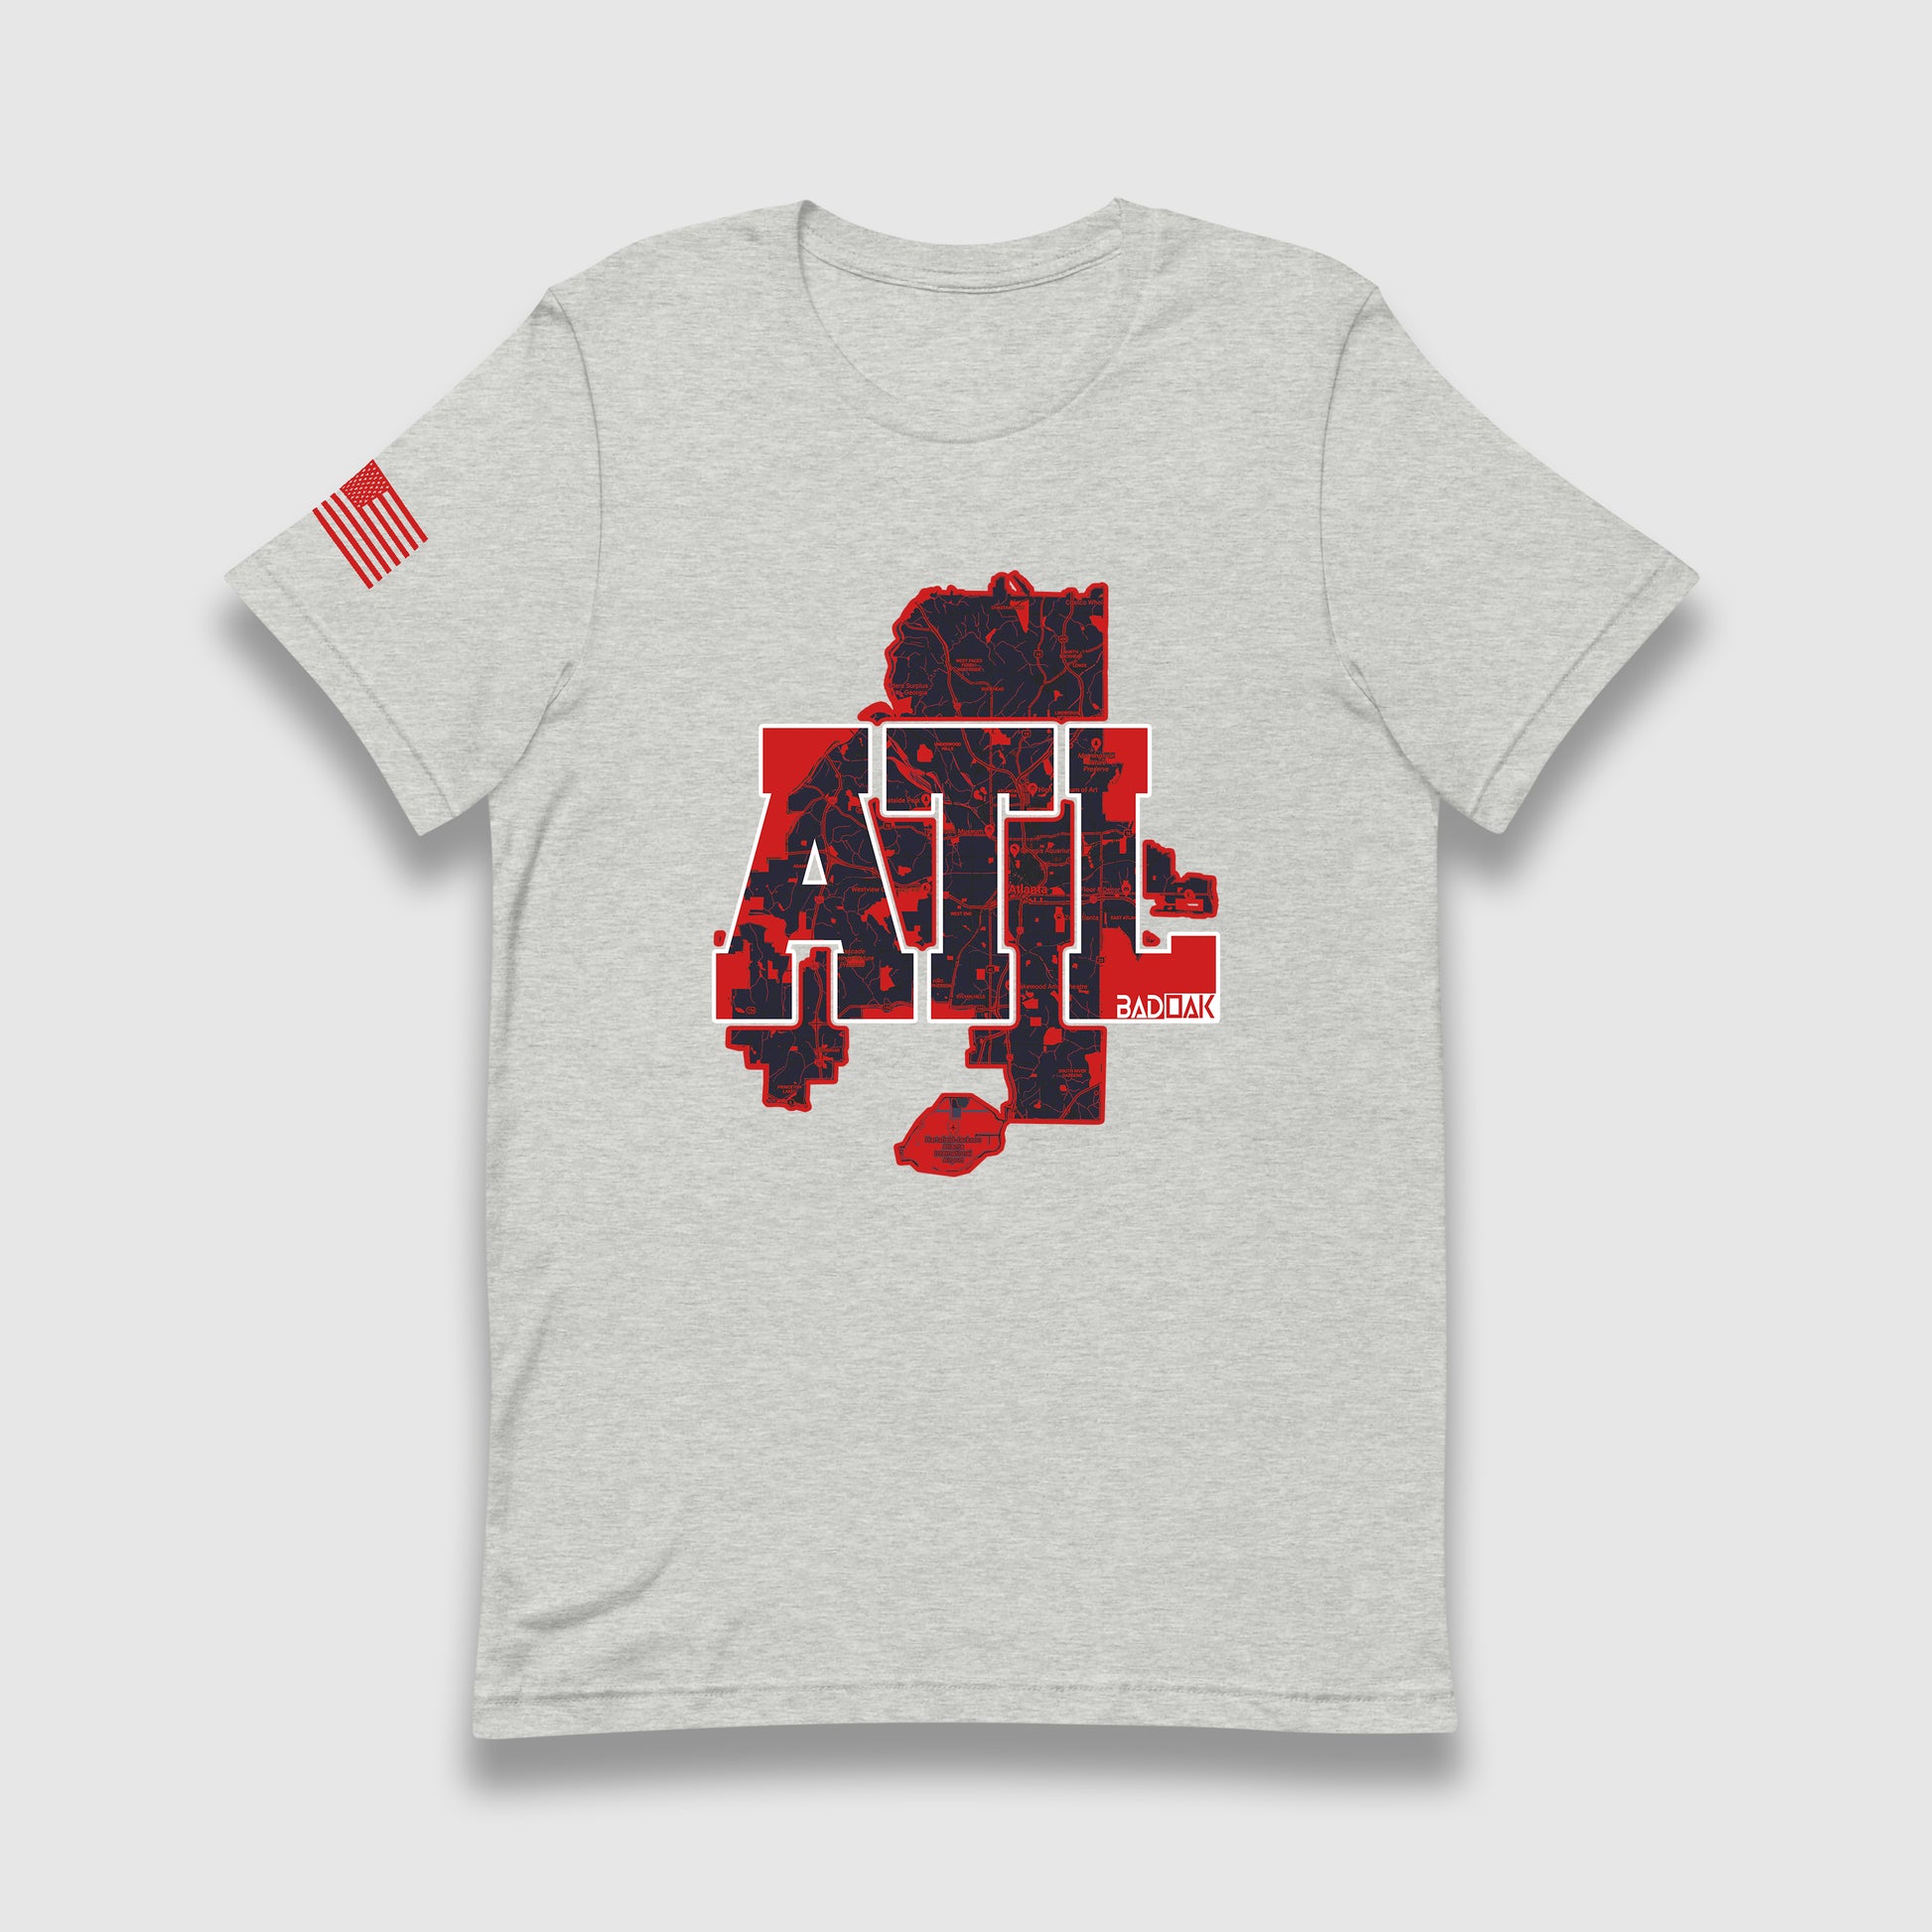 ATL (Atlanta) Unisex T-Shirt - BAD OAK